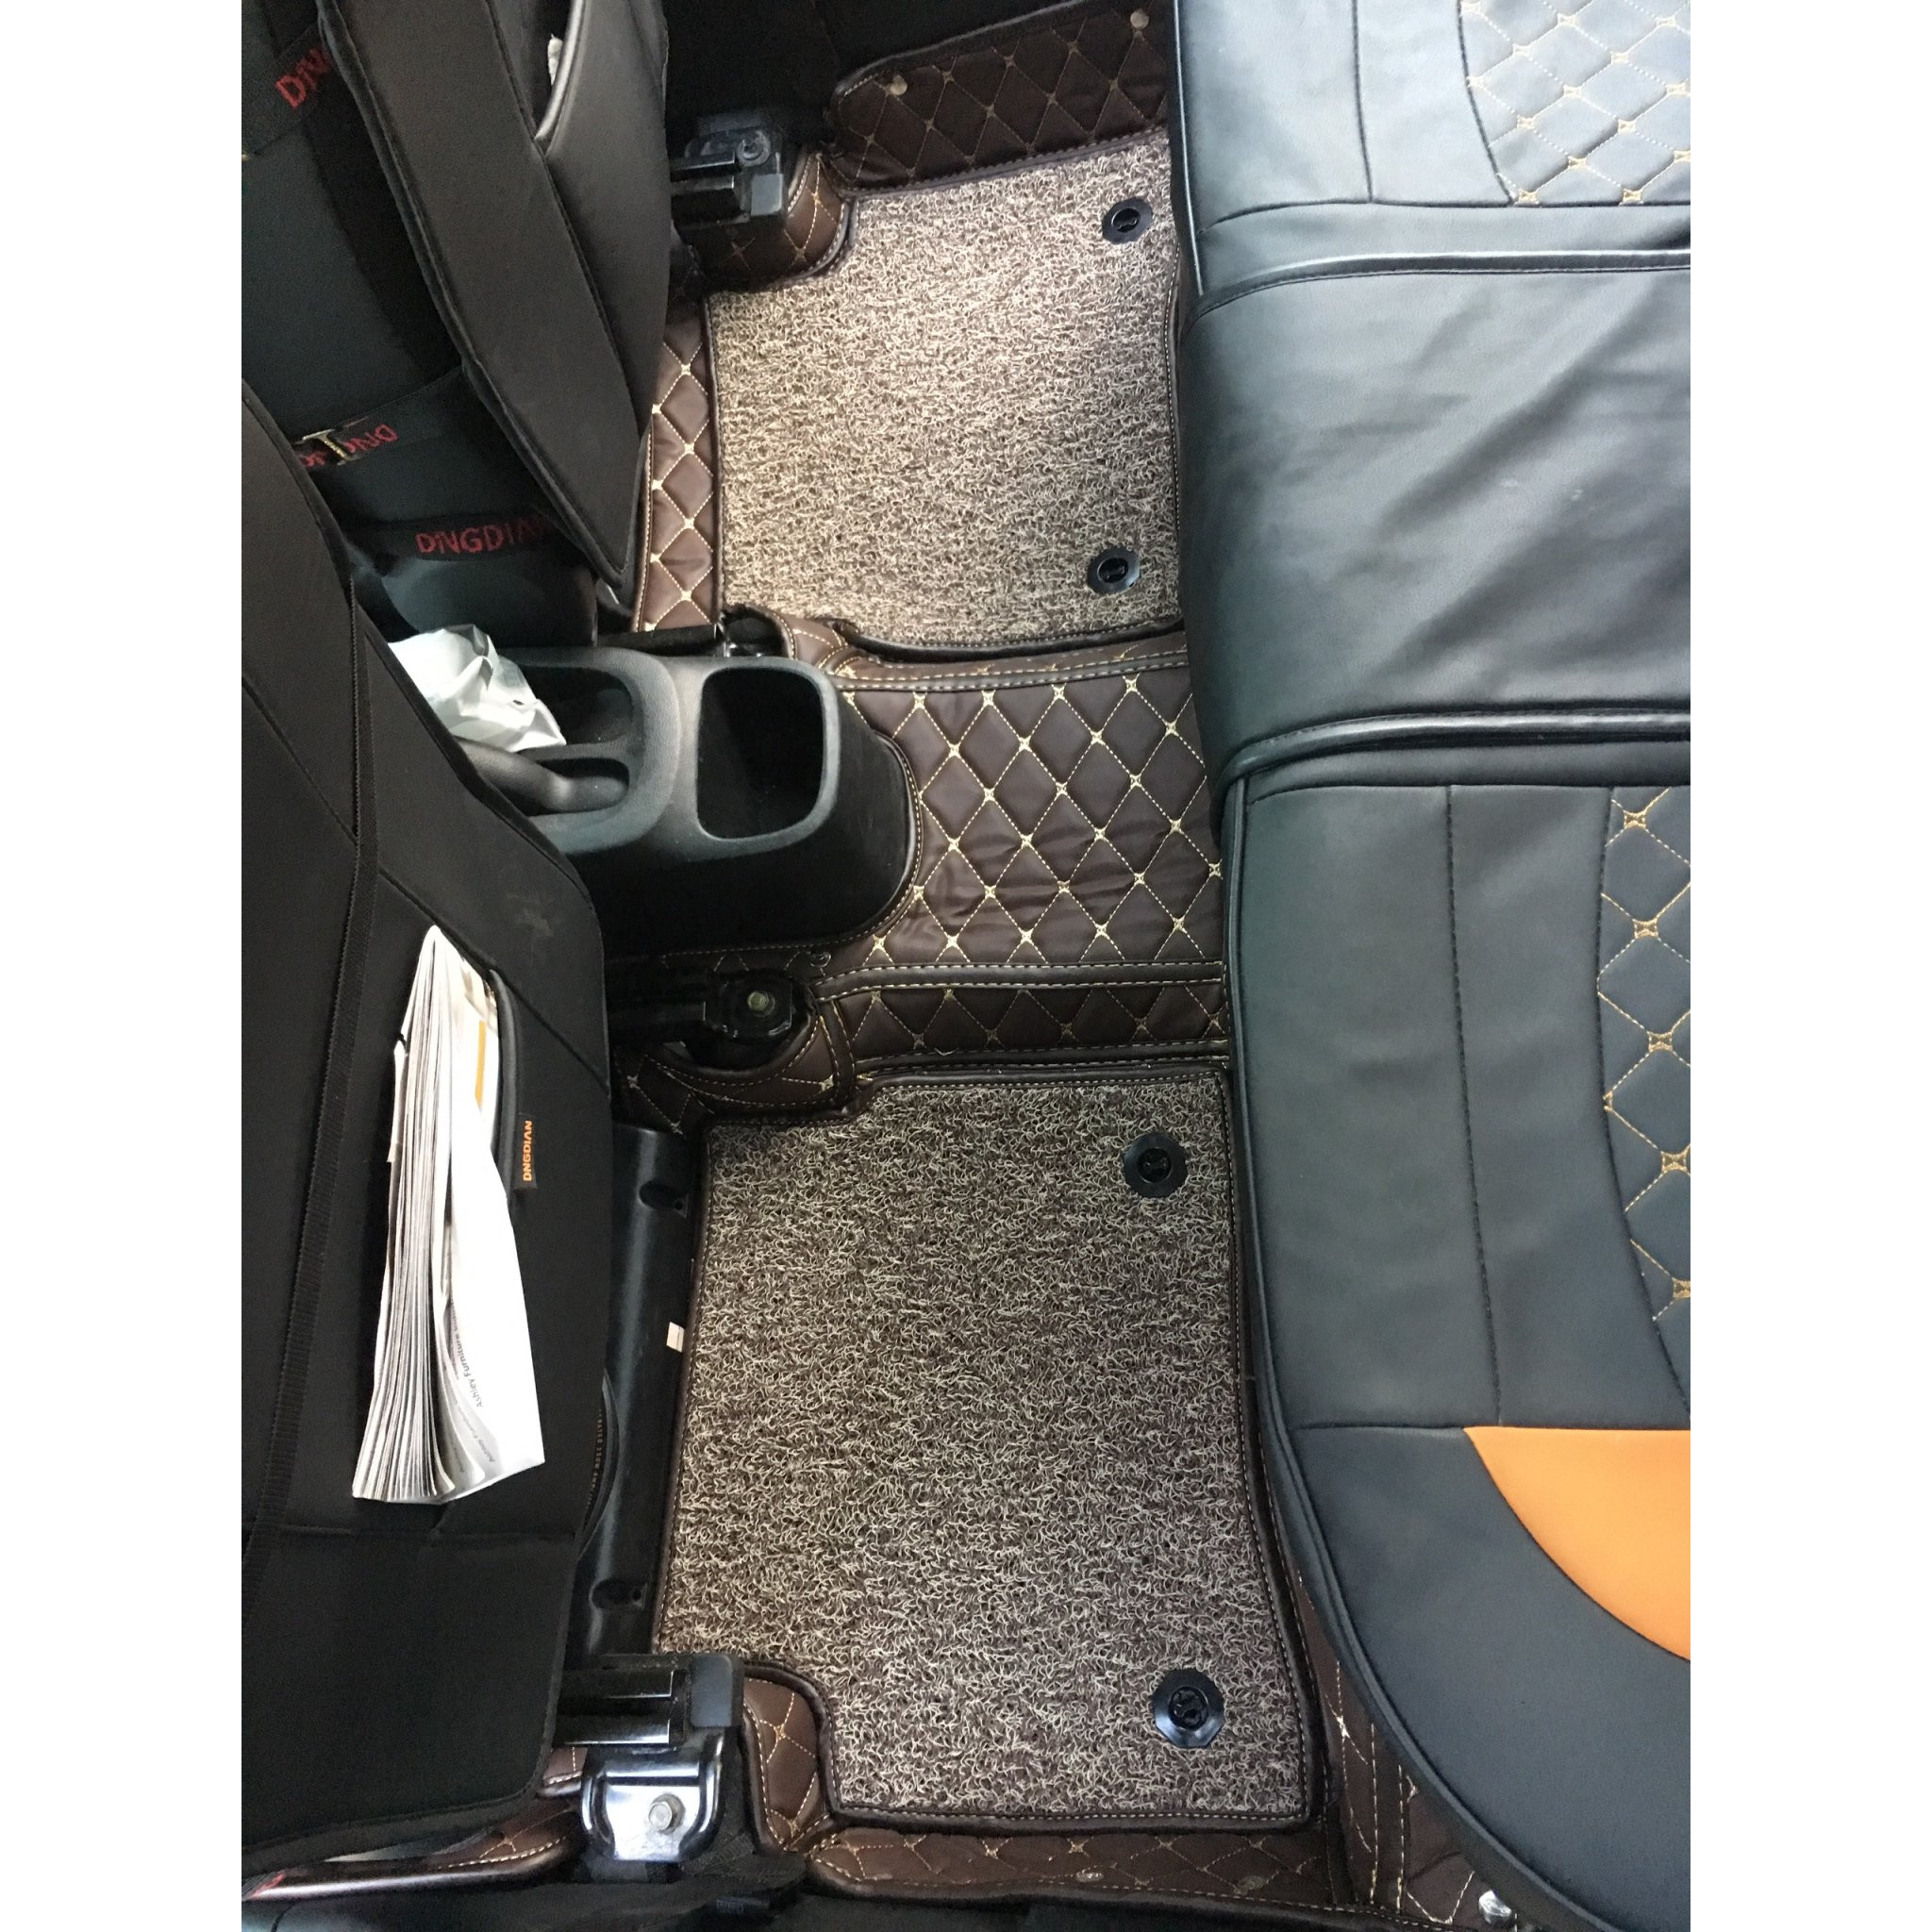 Thảm sàn ô tô 6D dành cho xe Hyundai Grand I10 hatchback 2014 da Thường màu T1.4 + R5 hình ảnh thật chụp bằng điện thoại không chỉnh sửa có video hướng dẫn lắp đặt tại nhà